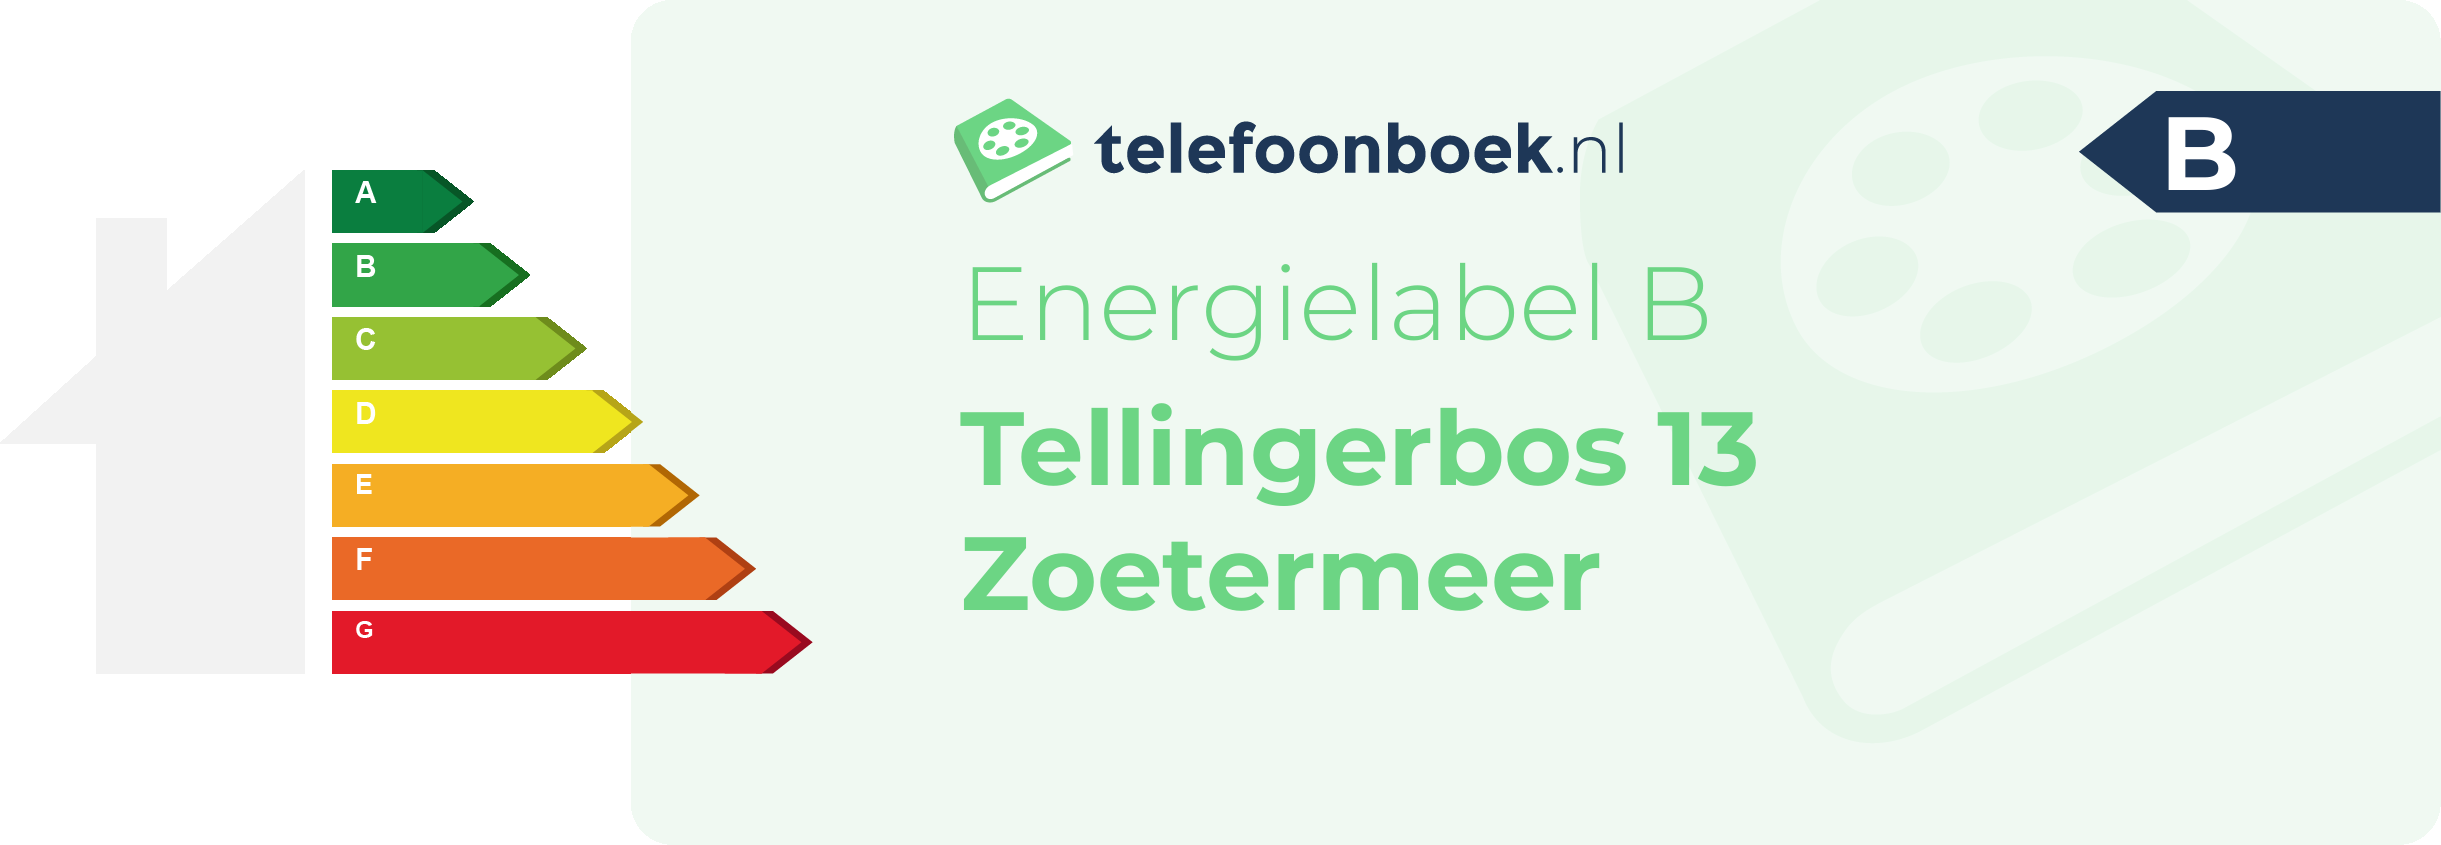 Energielabel Tellingerbos 13 Zoetermeer